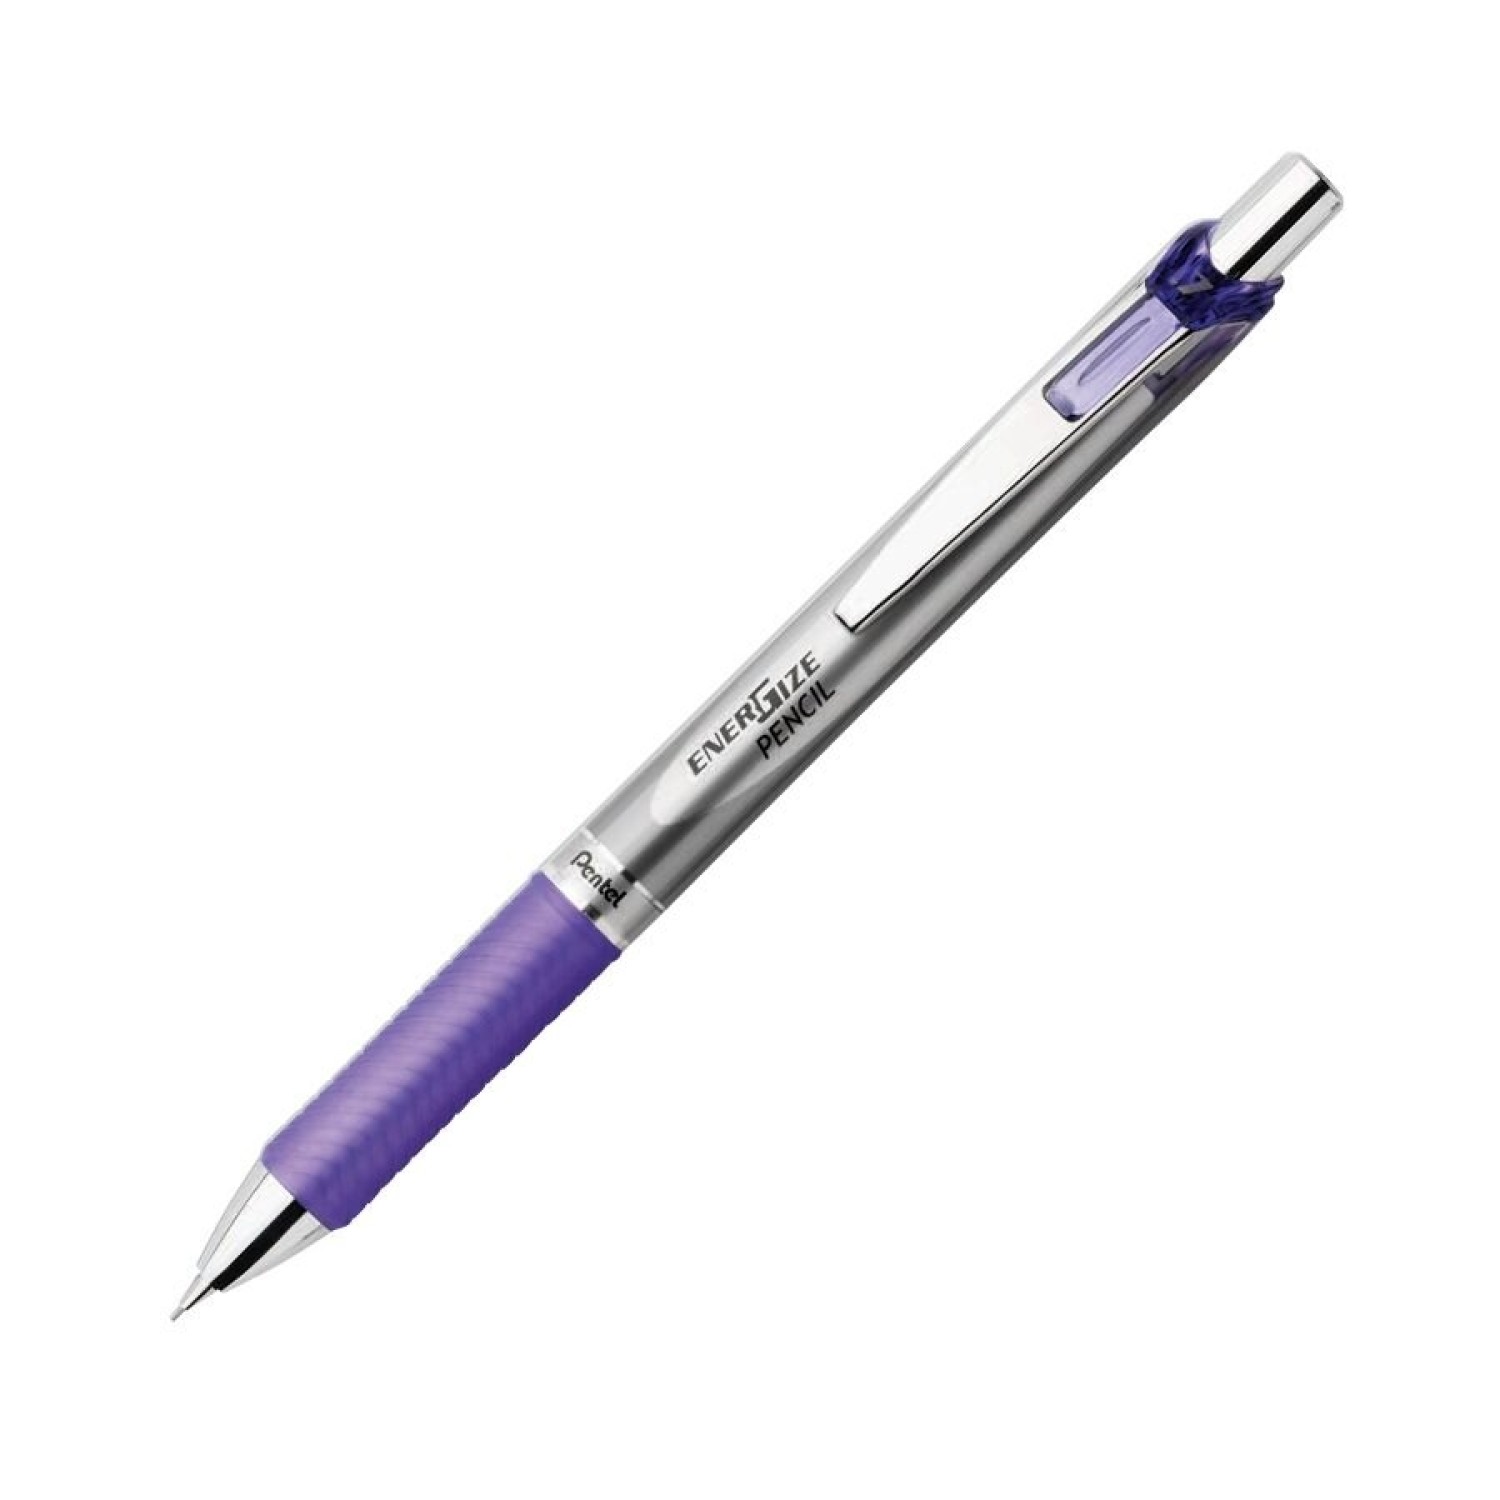 Карандаш 0.7. Pentel 0.7 механический карандаш. BIC механический карандаш 2мм Criterium. Карандаш механический 0,5 мм. Карандаш 0.7 мм.